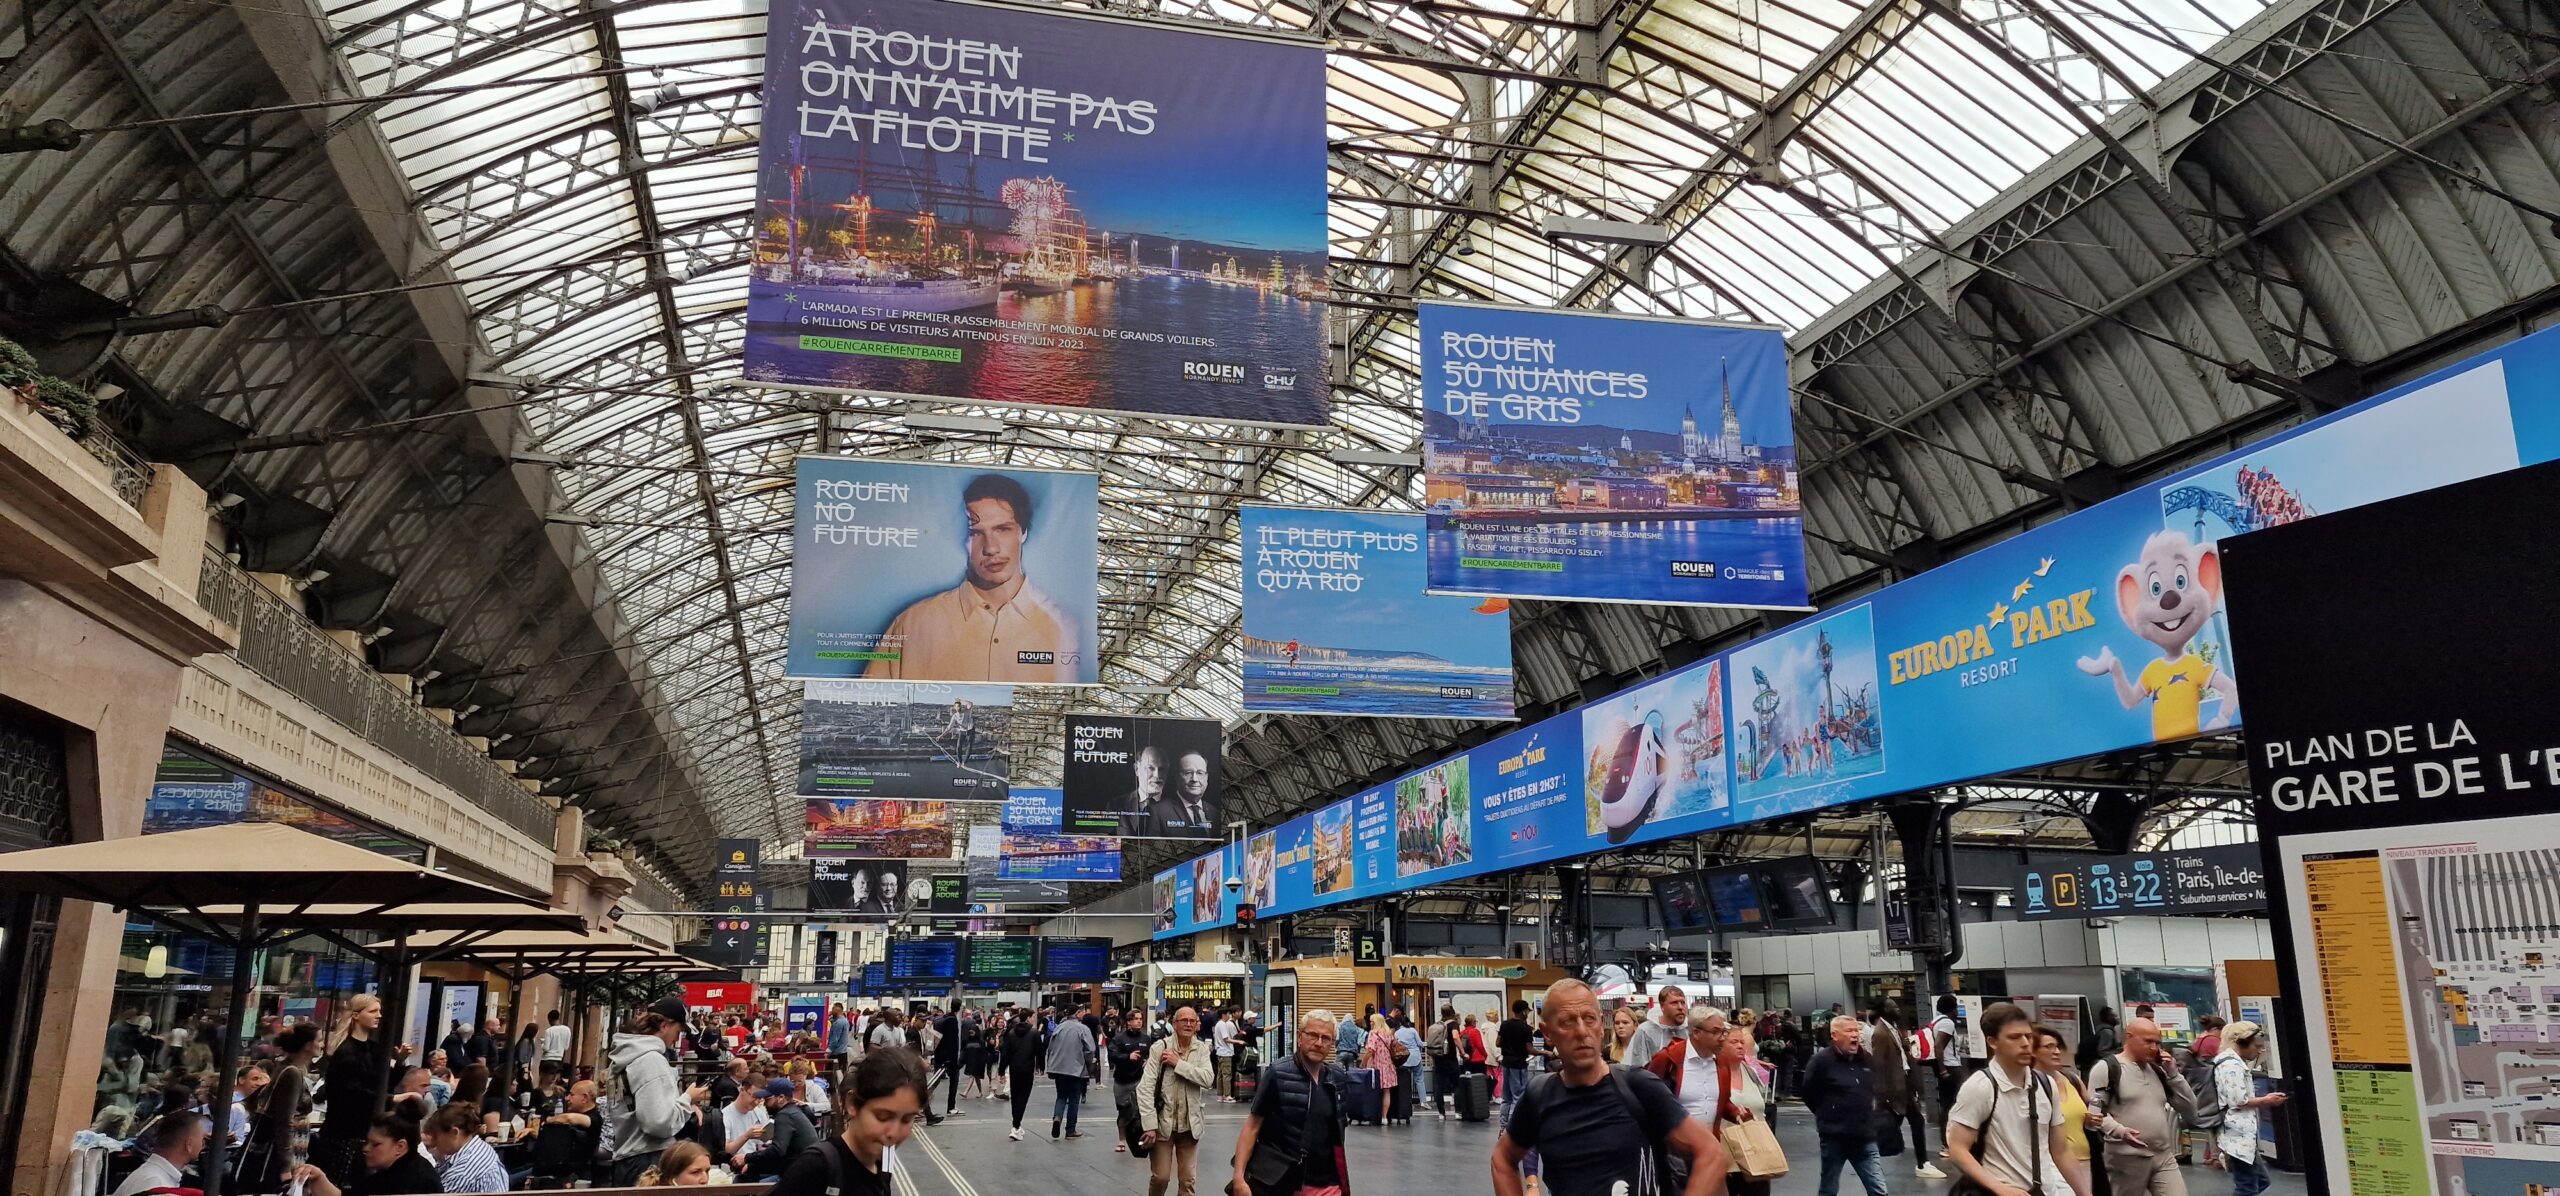 Campagne de communication #ROUENCARRÉMENTBARRÉ dans la gare de l'Est à Paris - Juin 2023 ©RNI